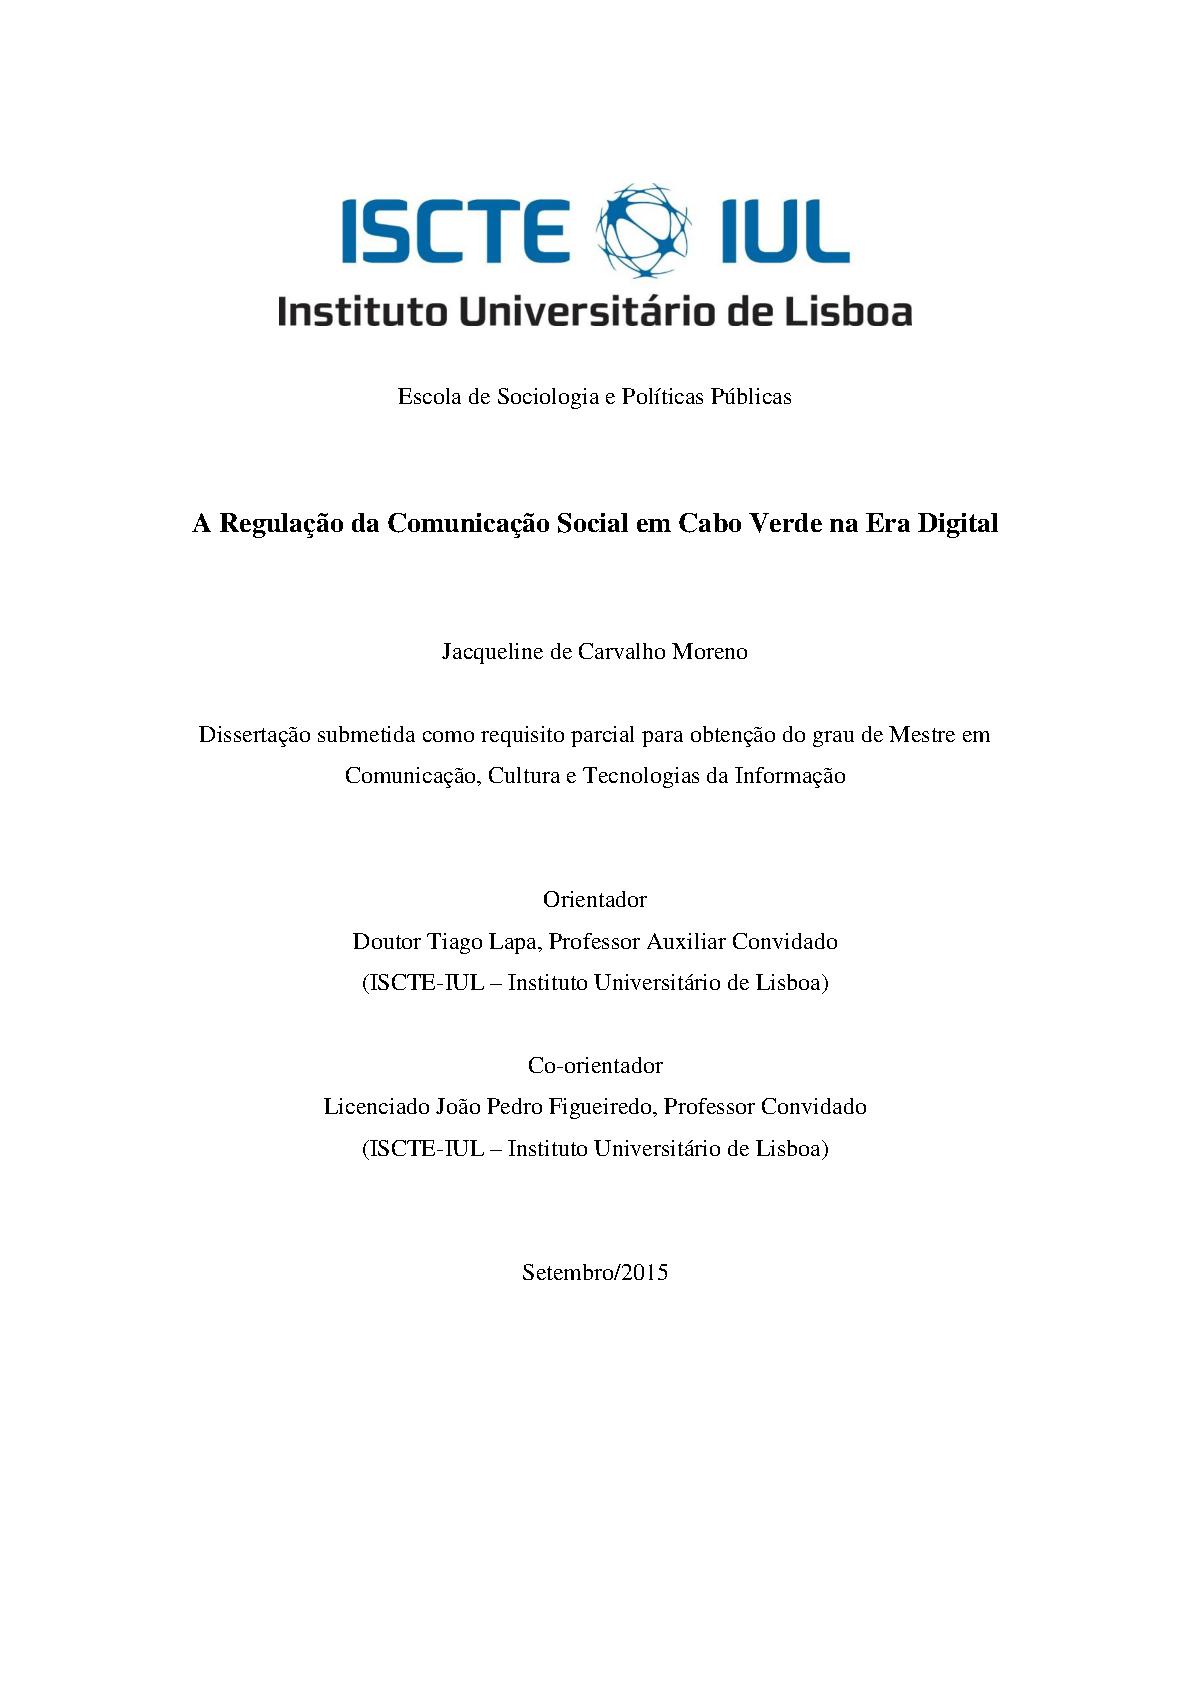 A Regulação da Comunicação Social em Cabo Verde na Era Digital